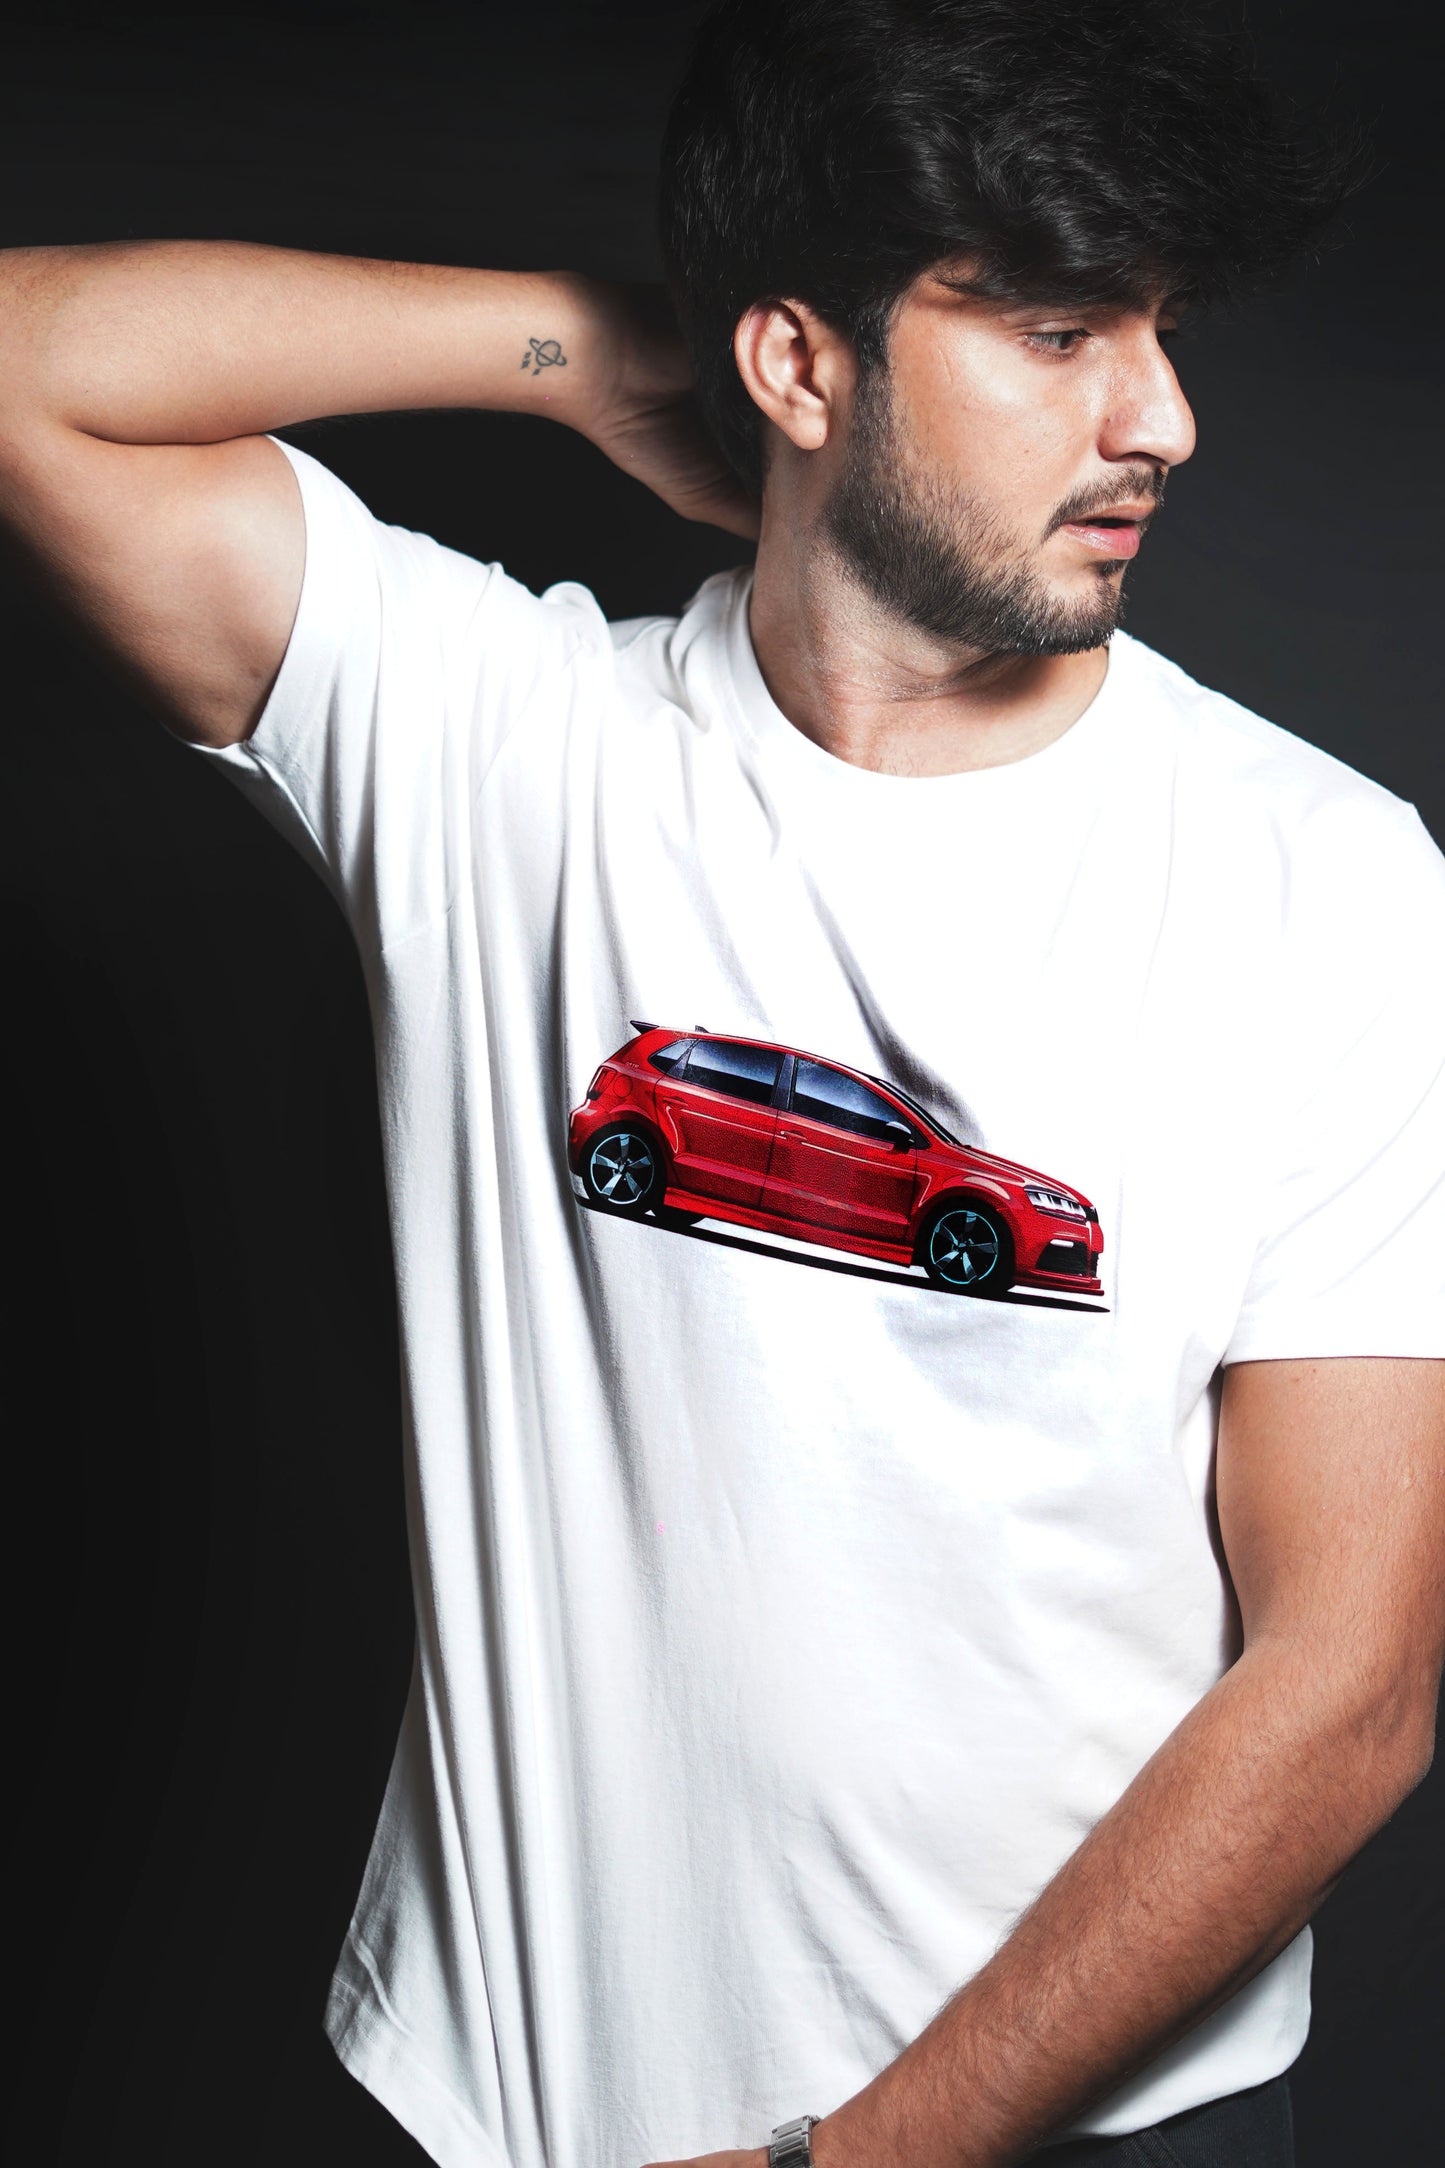 VW Polo | All Time Legend | CARBON COPY | Premium Unisex T-Shirt